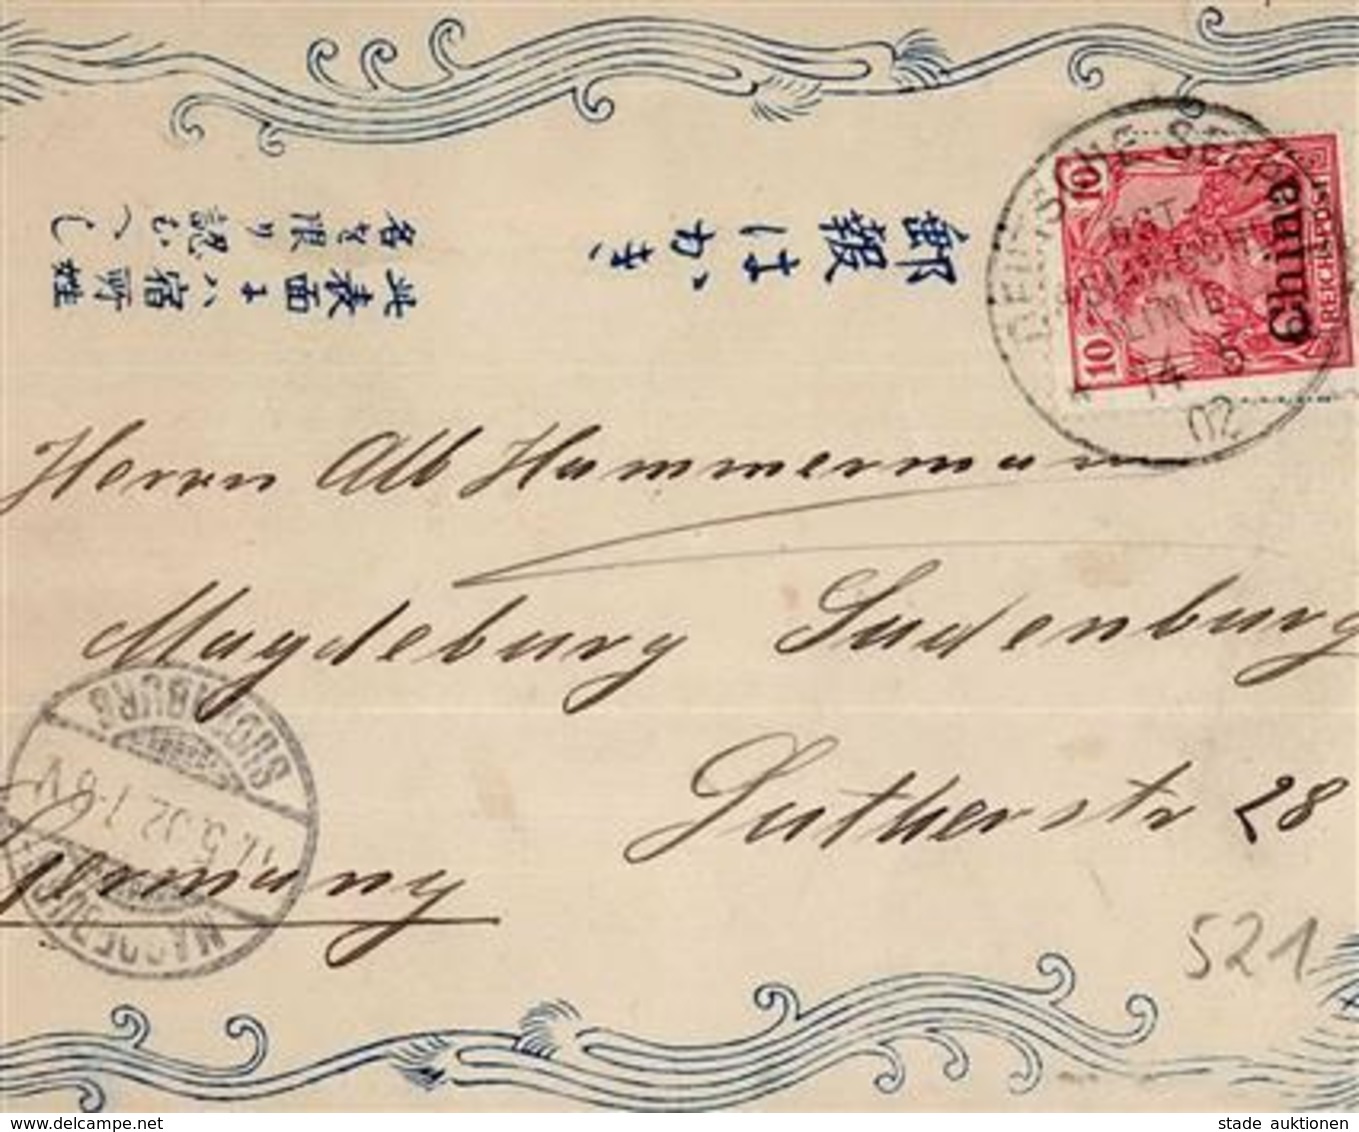 Kolonien Kiautschou Handgemalt Aus Nagasaki Stpl. Deutsche Seepost Ostasiatische Linie 14.5.02 I-II Peint à La Main Colo - Histoire